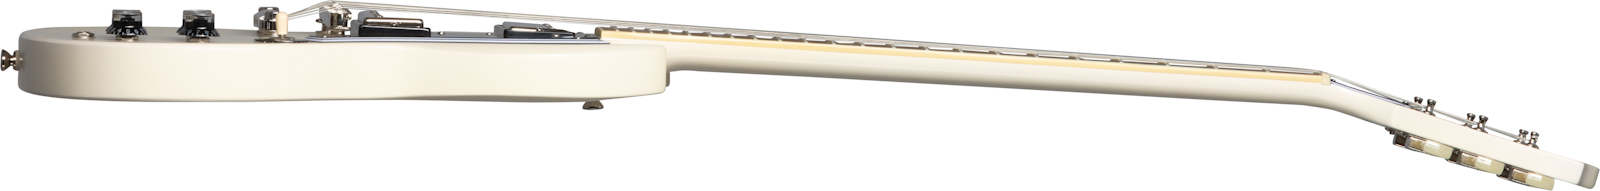 Epiphone Sg Les Paul Standard 1961 2h Ht Lau - Aged Classic White - Guitare Électrique Double Cut - Variation 2